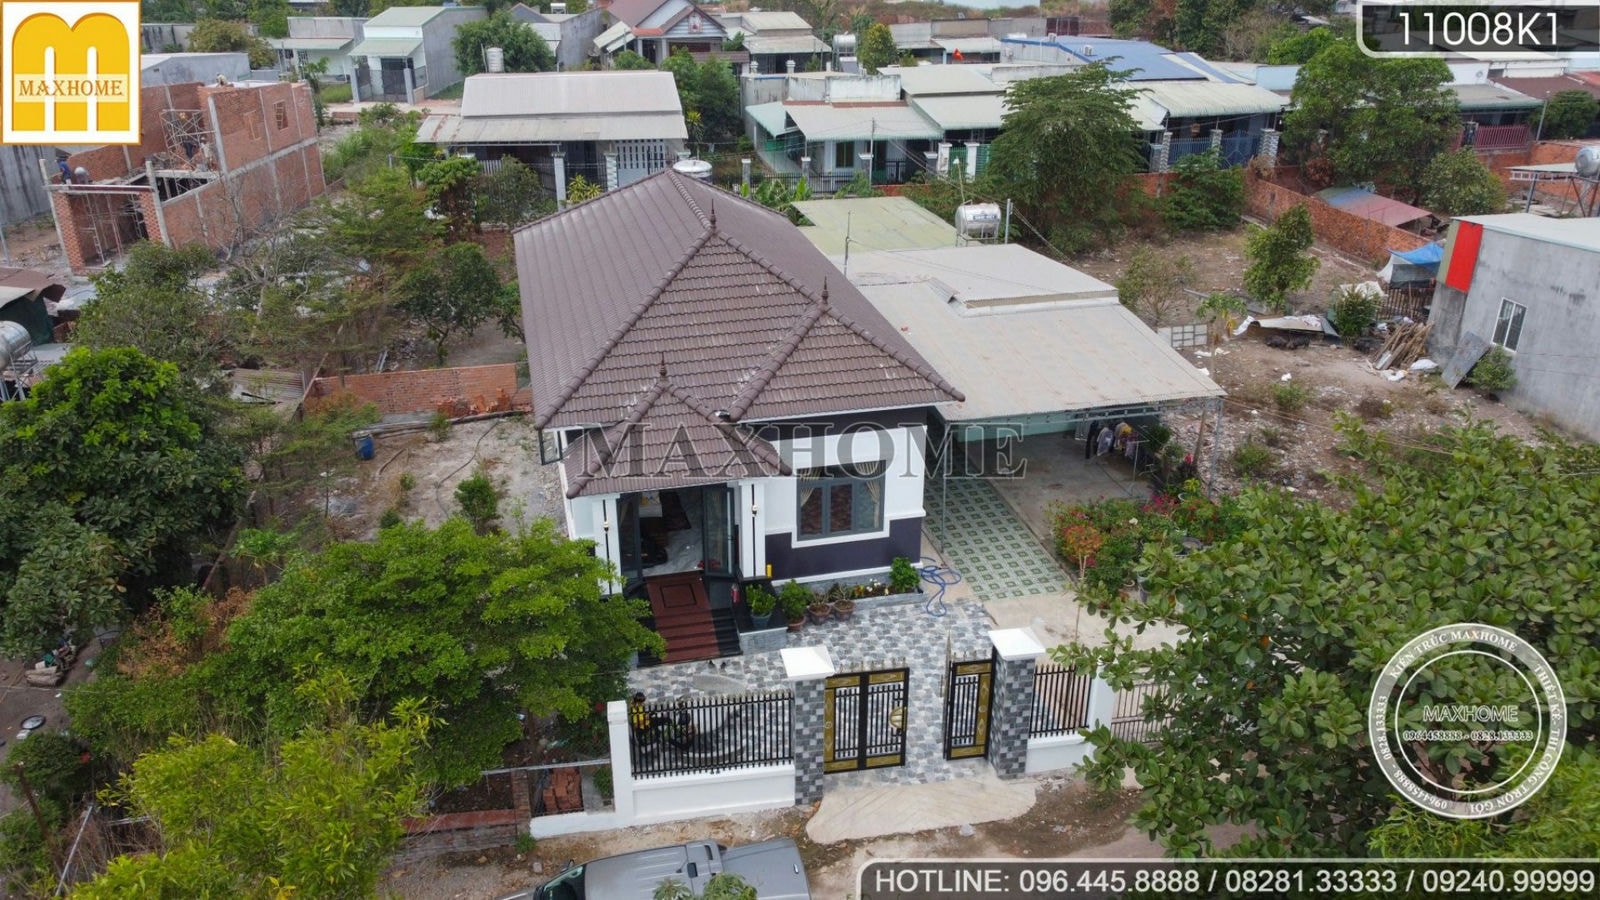 Quá đẹp với căn nhà vườn cấp 4 được hoàn thiện ở Đồng Nai | MH01434